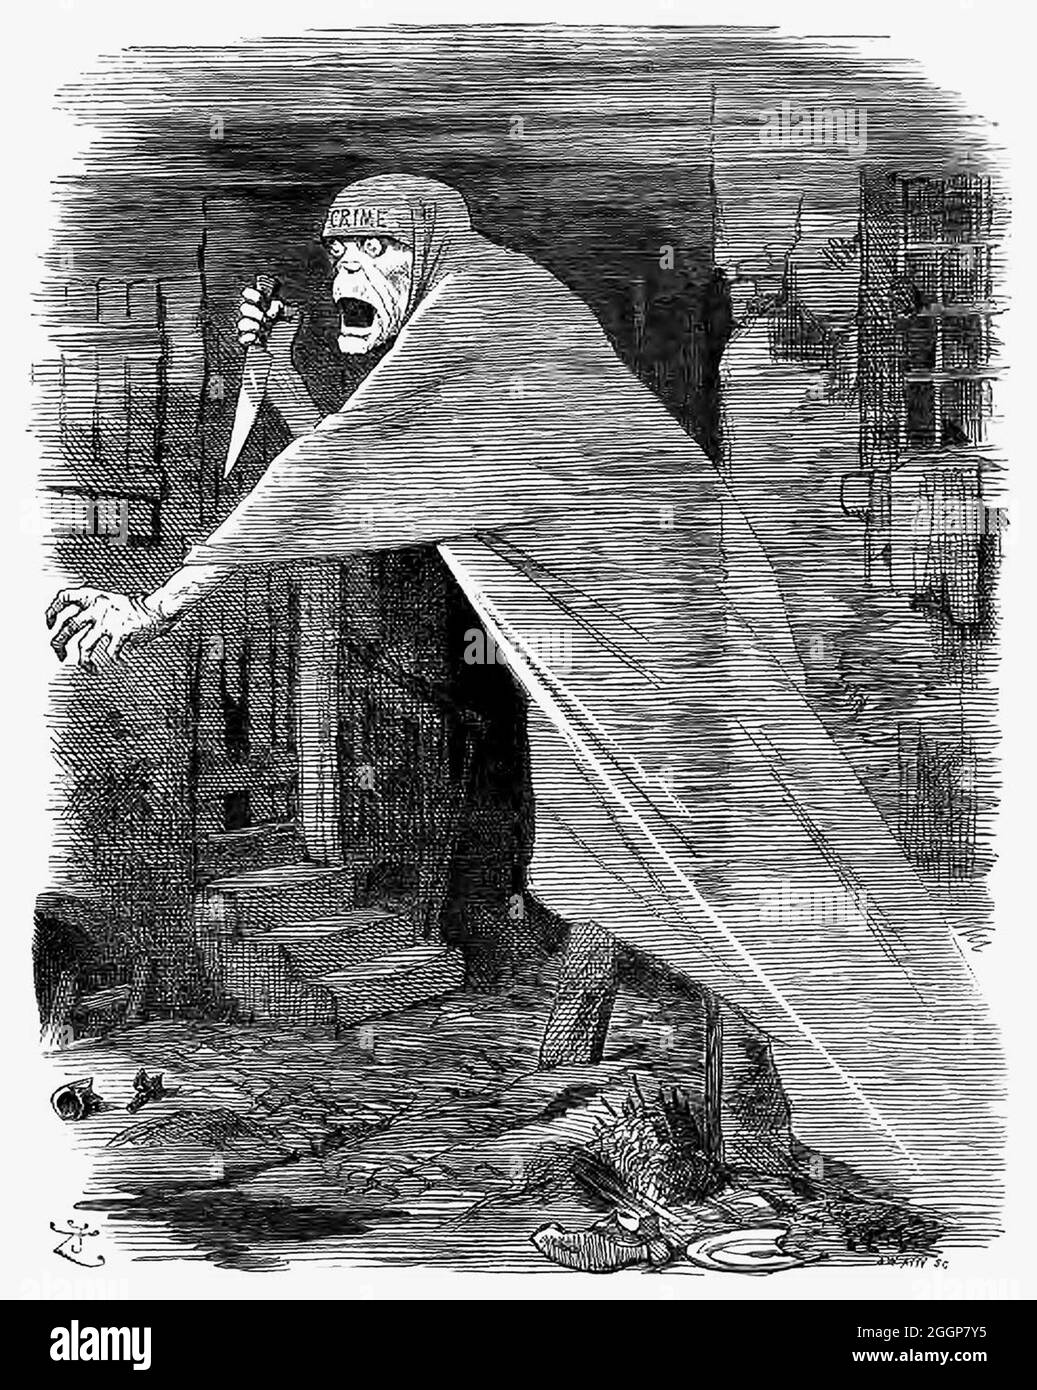 Un fumetto satirico della rivista Punch che mostra il fantasma di Jack lo Squartatore che si snodano nel quartiere Whitechapel di Londra, simboleggiando il 'crimine malvente--la nemesi della negligenza', i.. Foto Stock